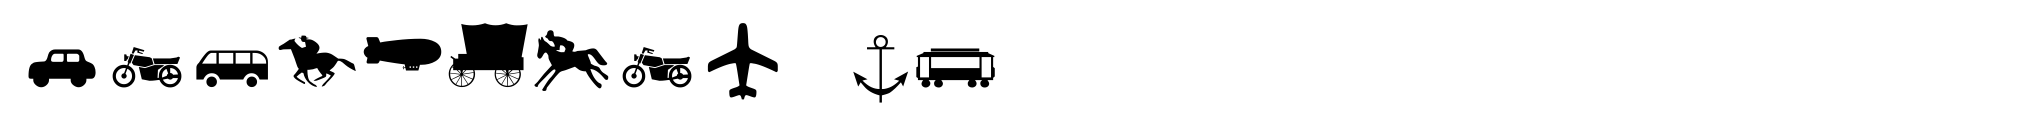 Transport Pi image